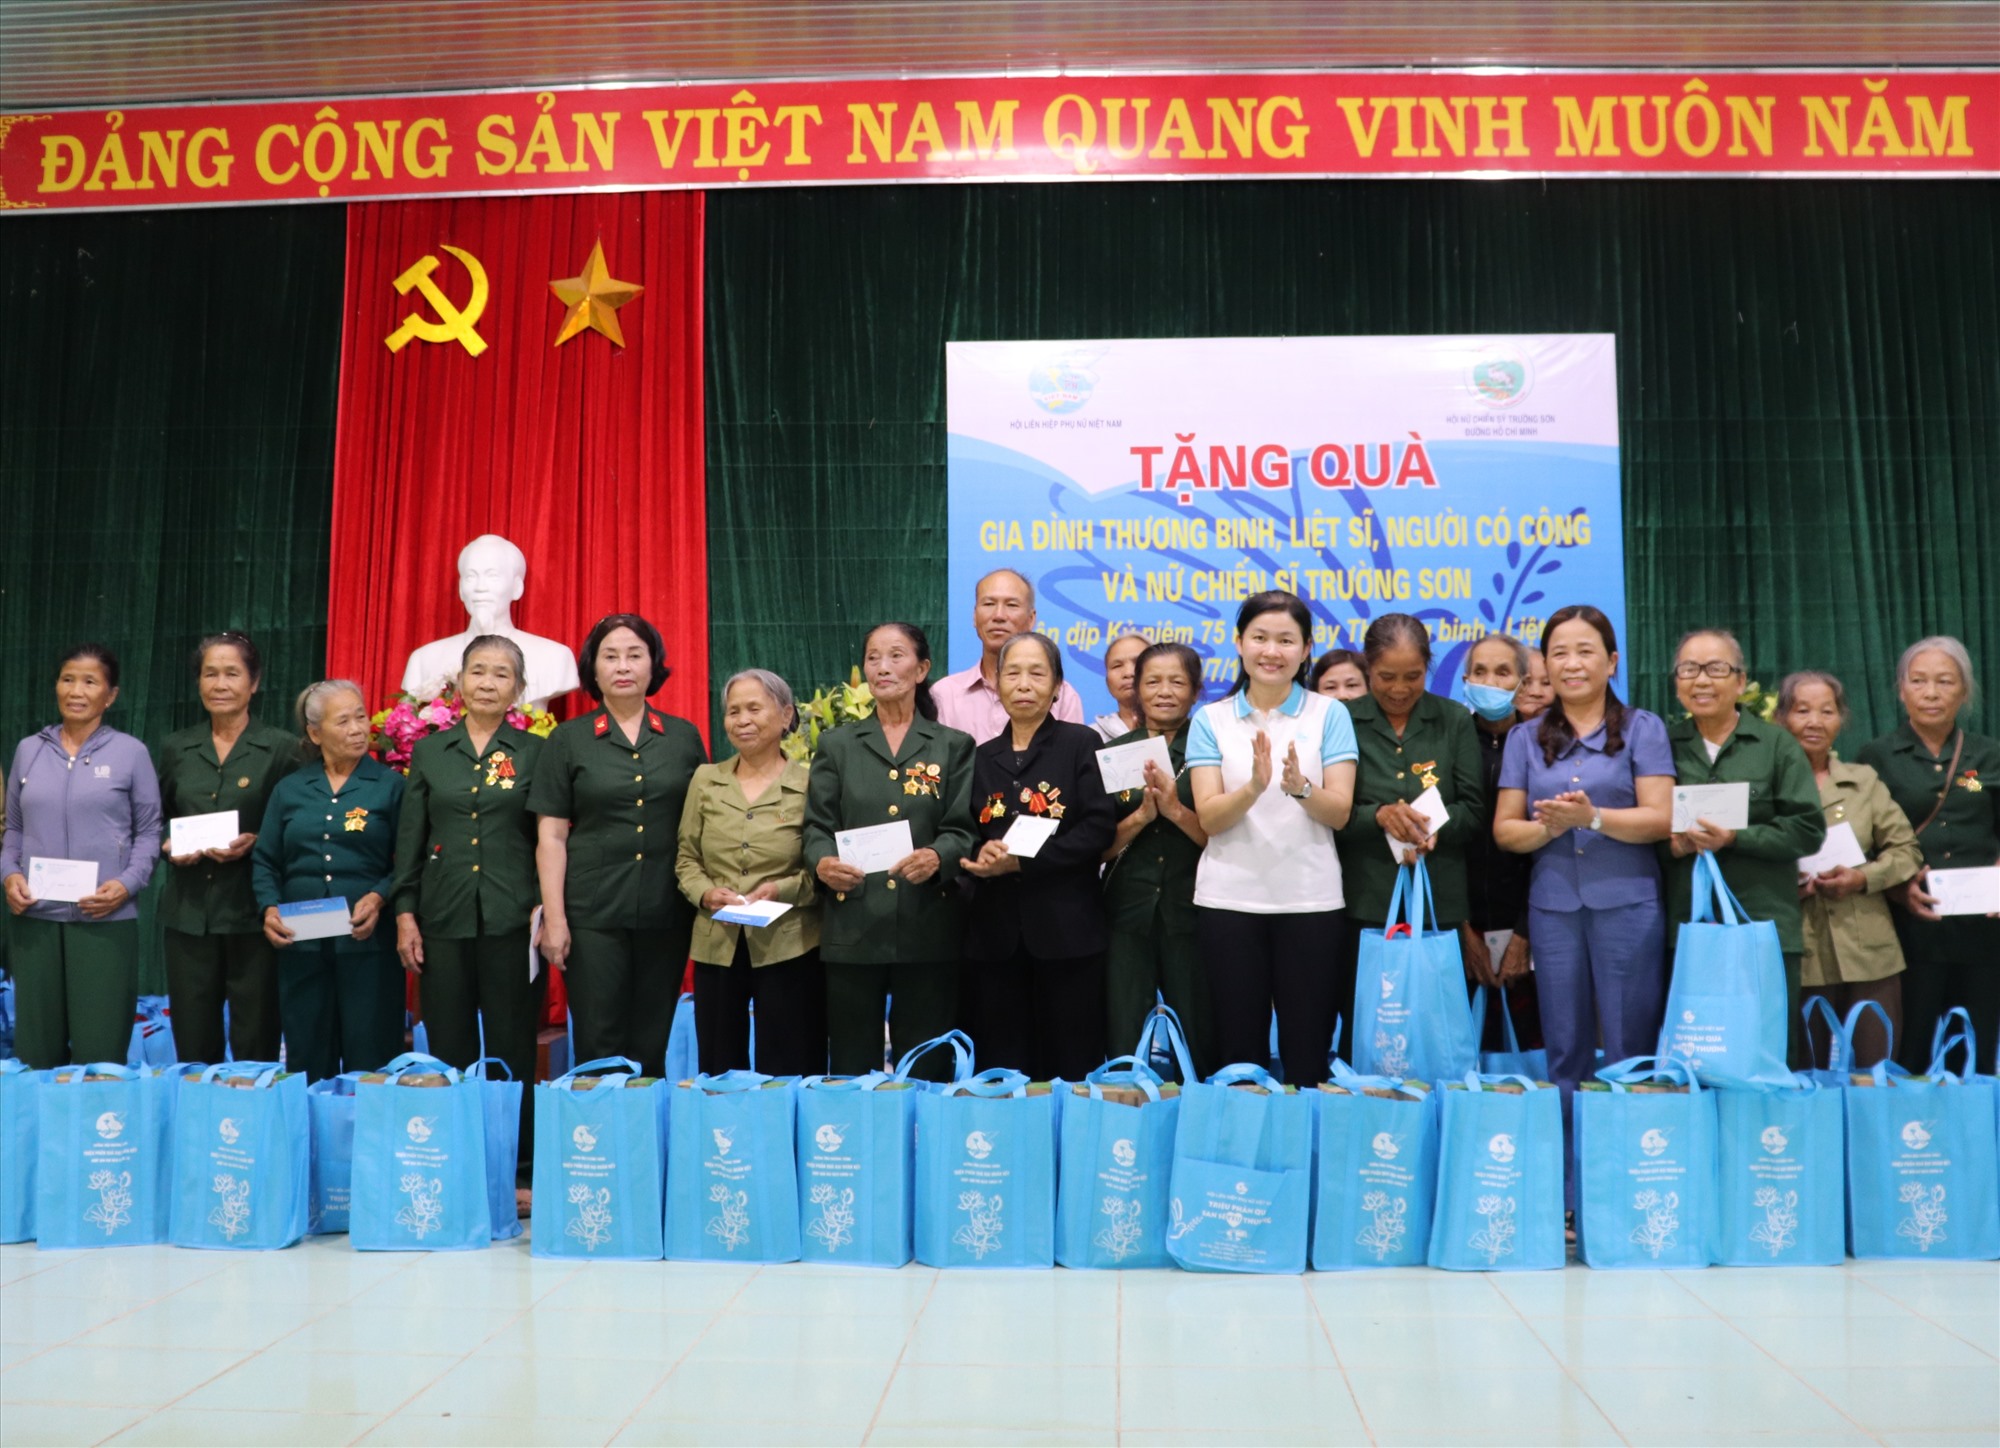 Trao quà của Trung ương Hội LHPN Việt Nam cho các thương bệnh binh, người có công tại xã Hải Thượng - Ảnh: T.P